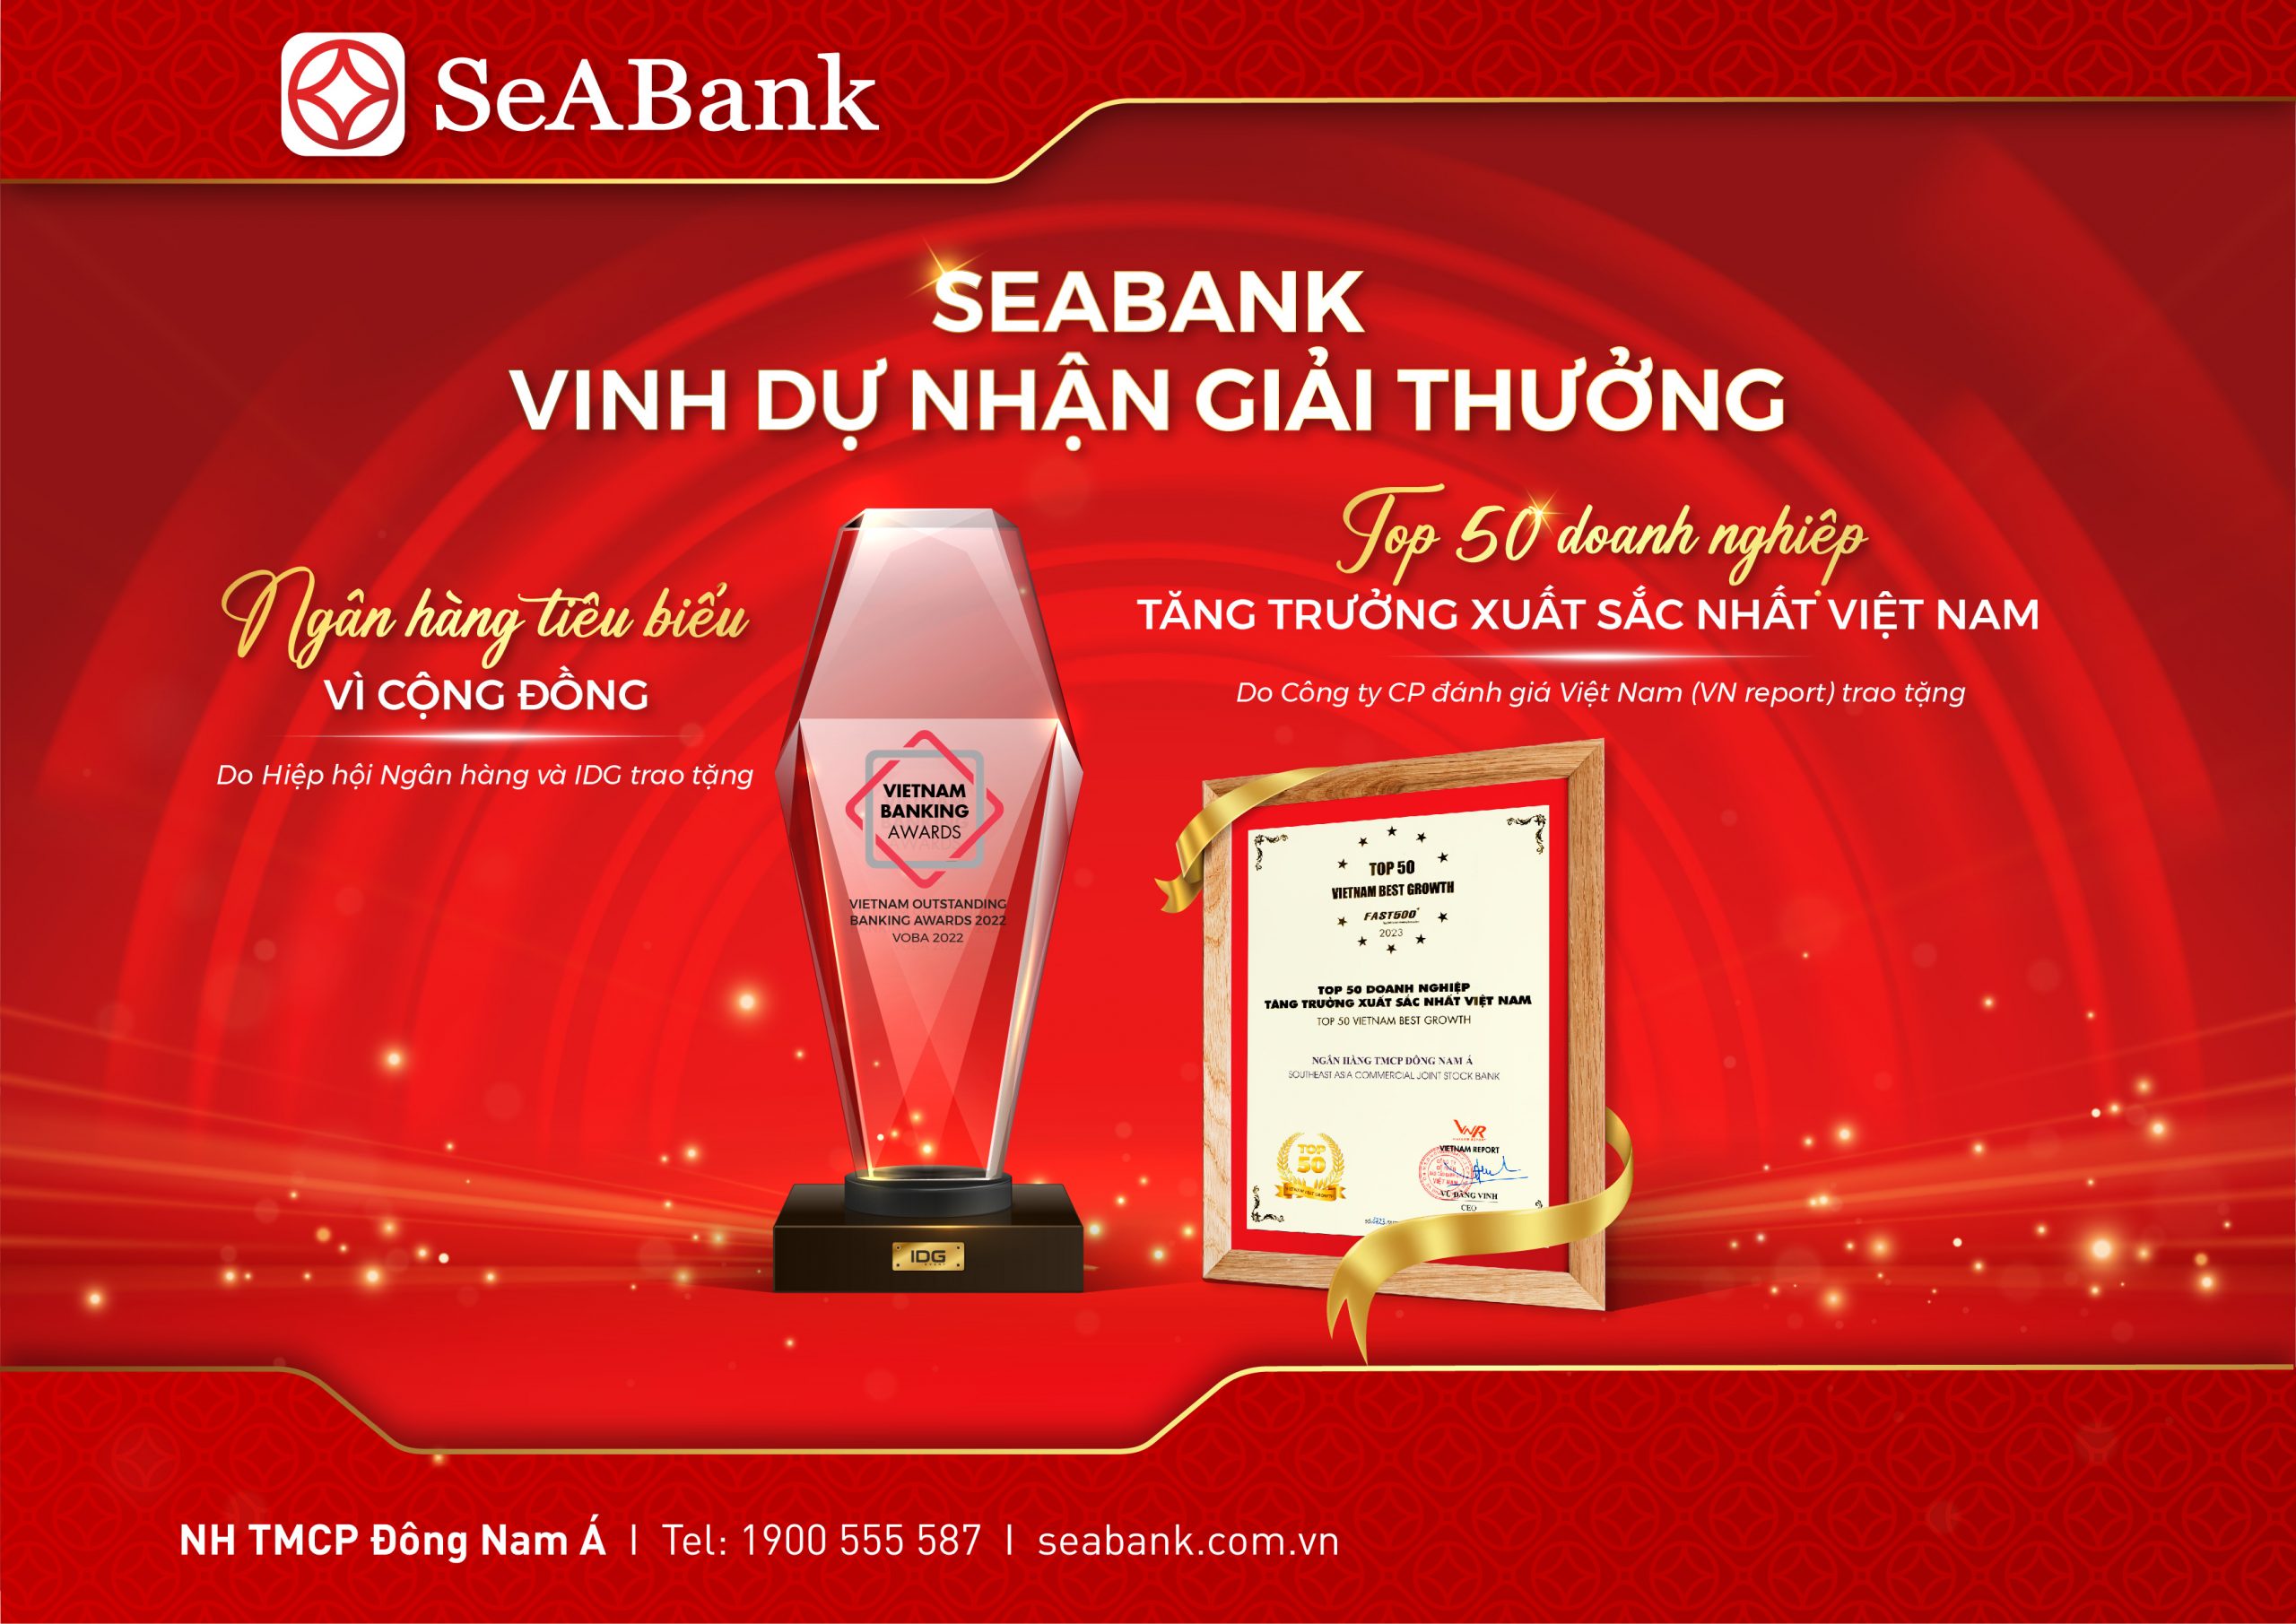 SeABAnk nhận 2 danh hiệu “Top 50 Doanh nghiệp tăng trưởng xuất sắc nhất Việt Nam” và “Top 500 Doanh nghiệp tăng trưởng nhanh nhất Việt Nam”